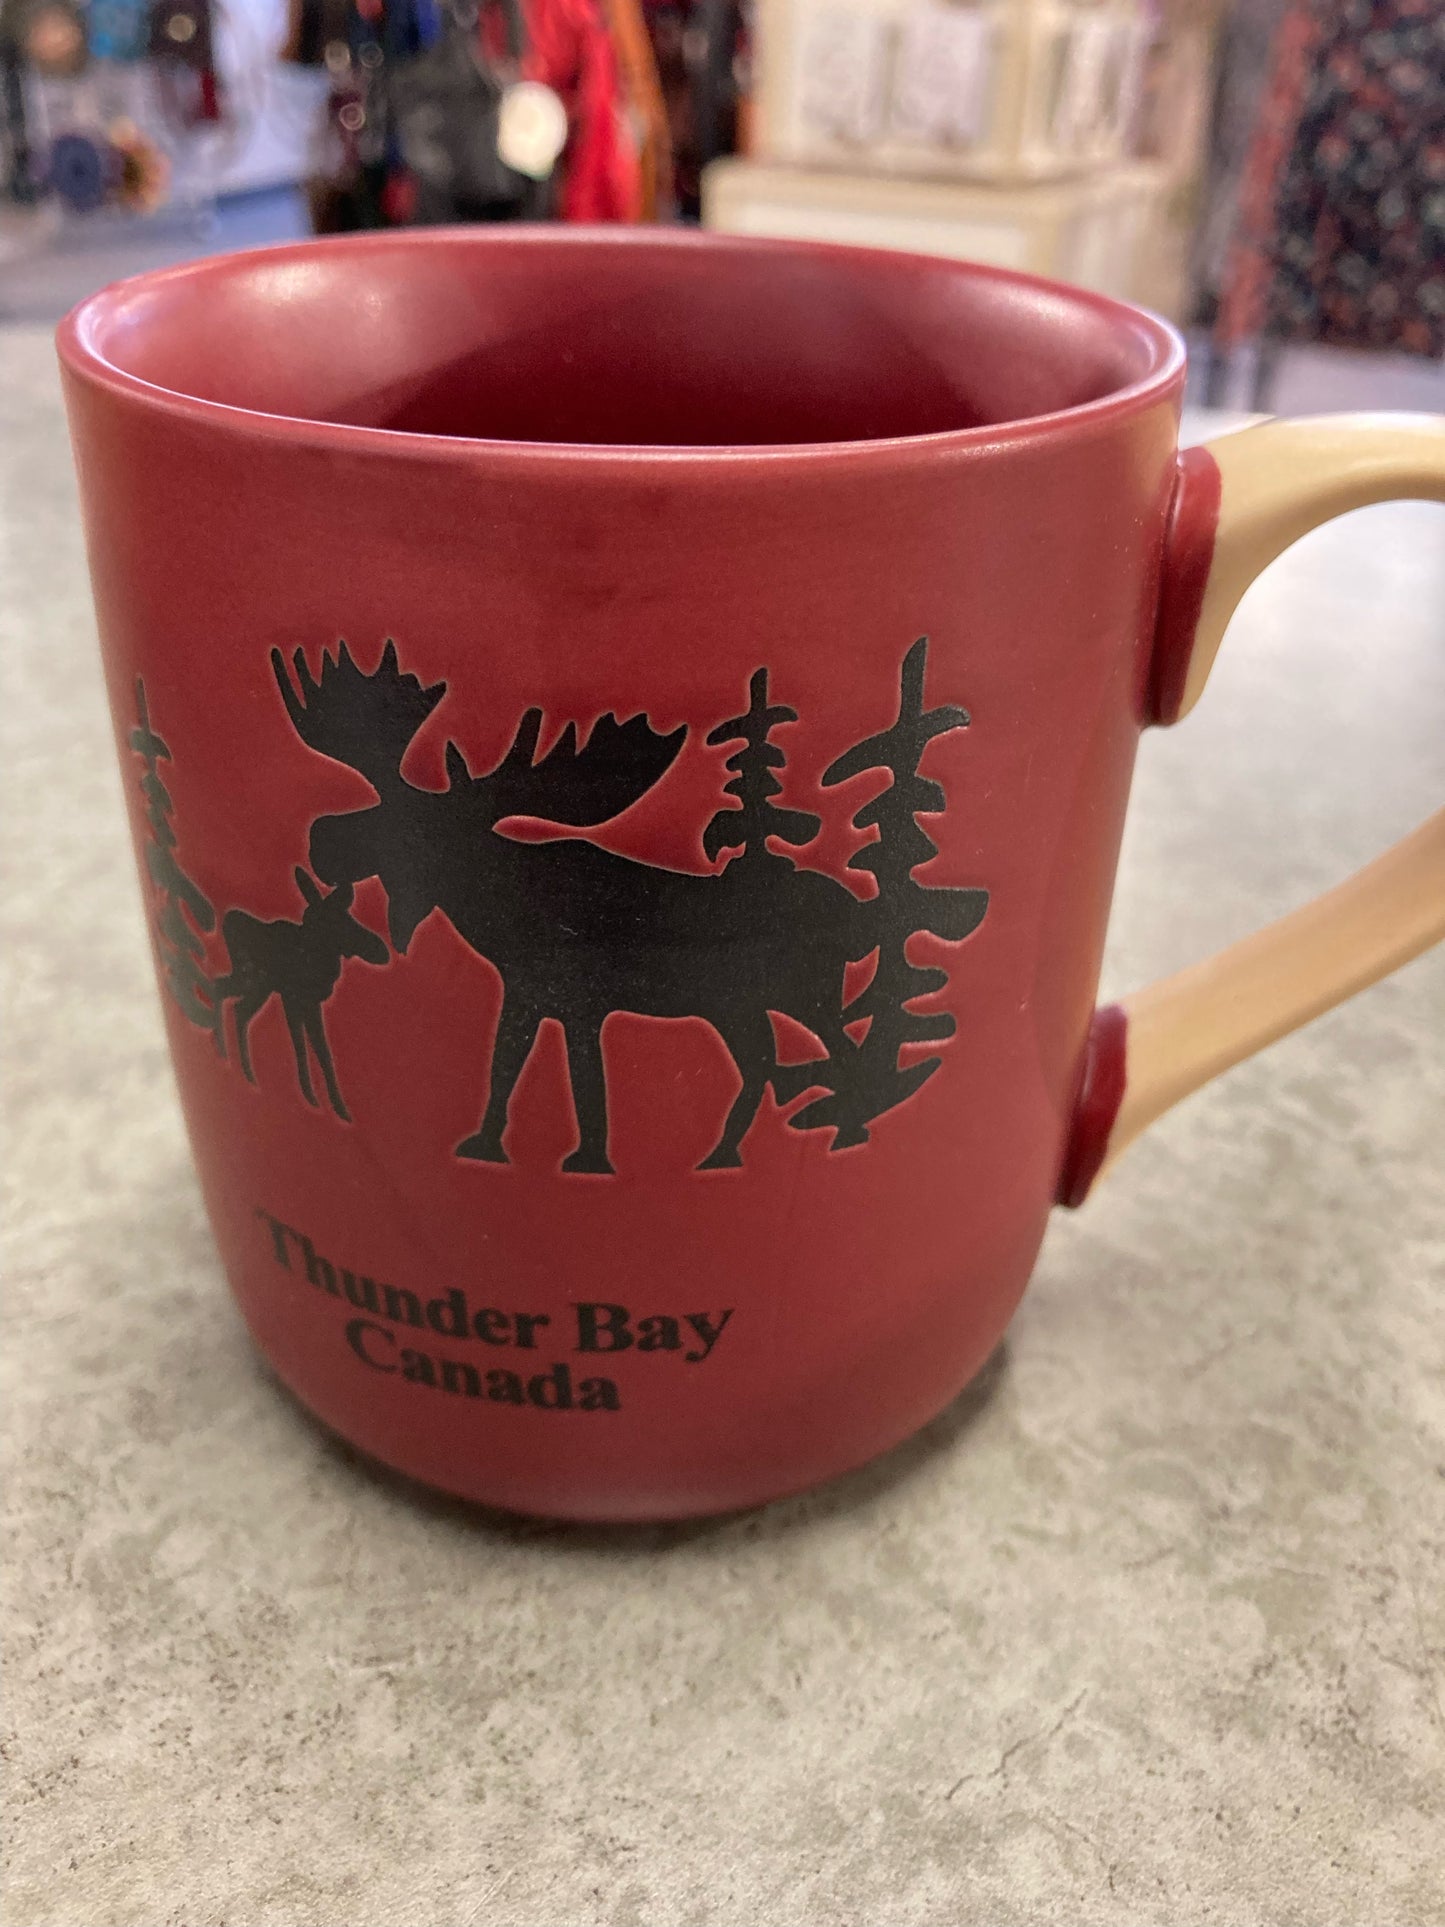 Souvenir Mug - Moose Facts - Thunder Bay, Canada